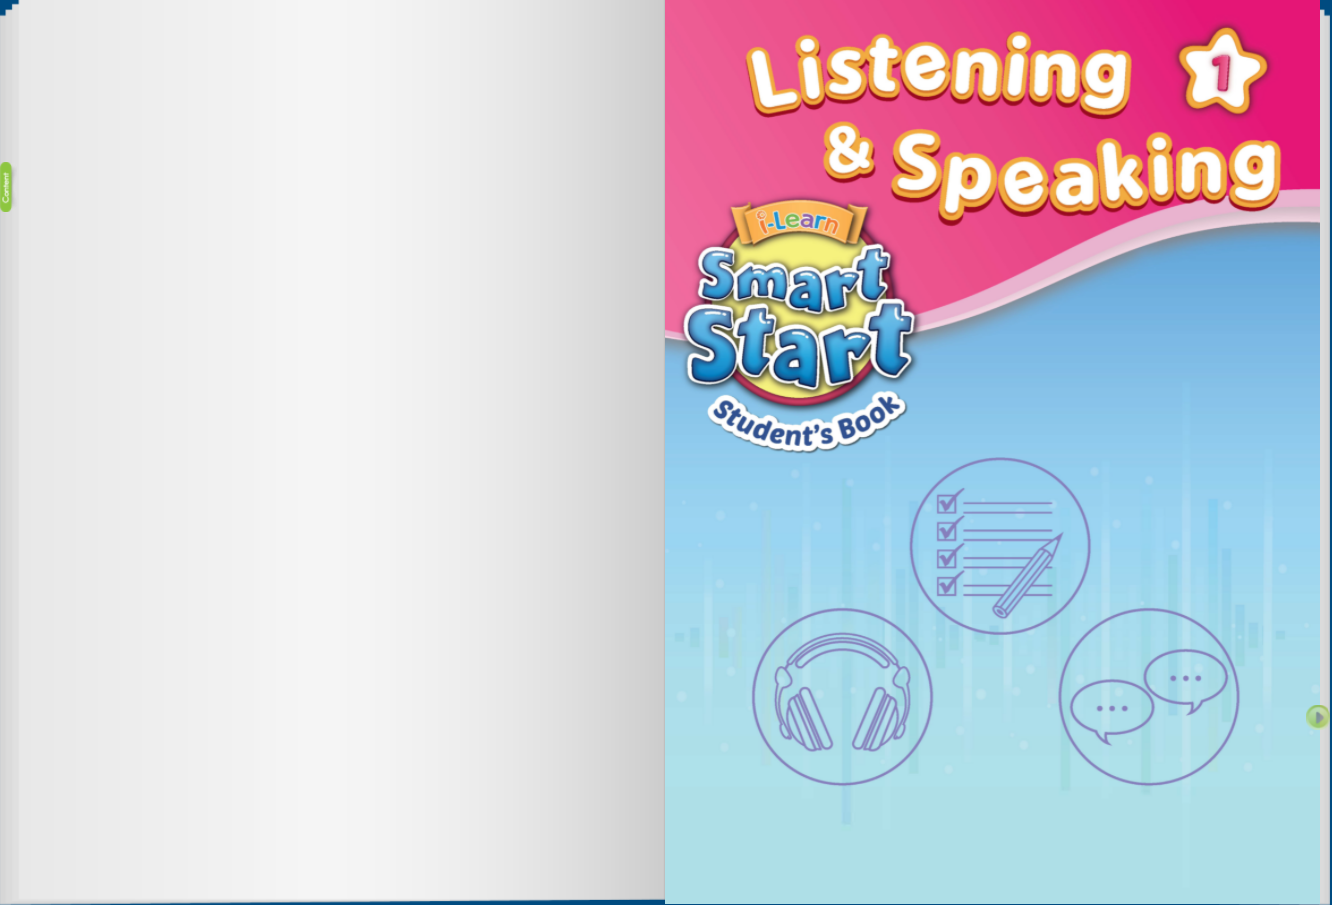 [E-BOOK] i-Learn Smart Start Listening & Speaking 1 Sách mềm sách học sinh